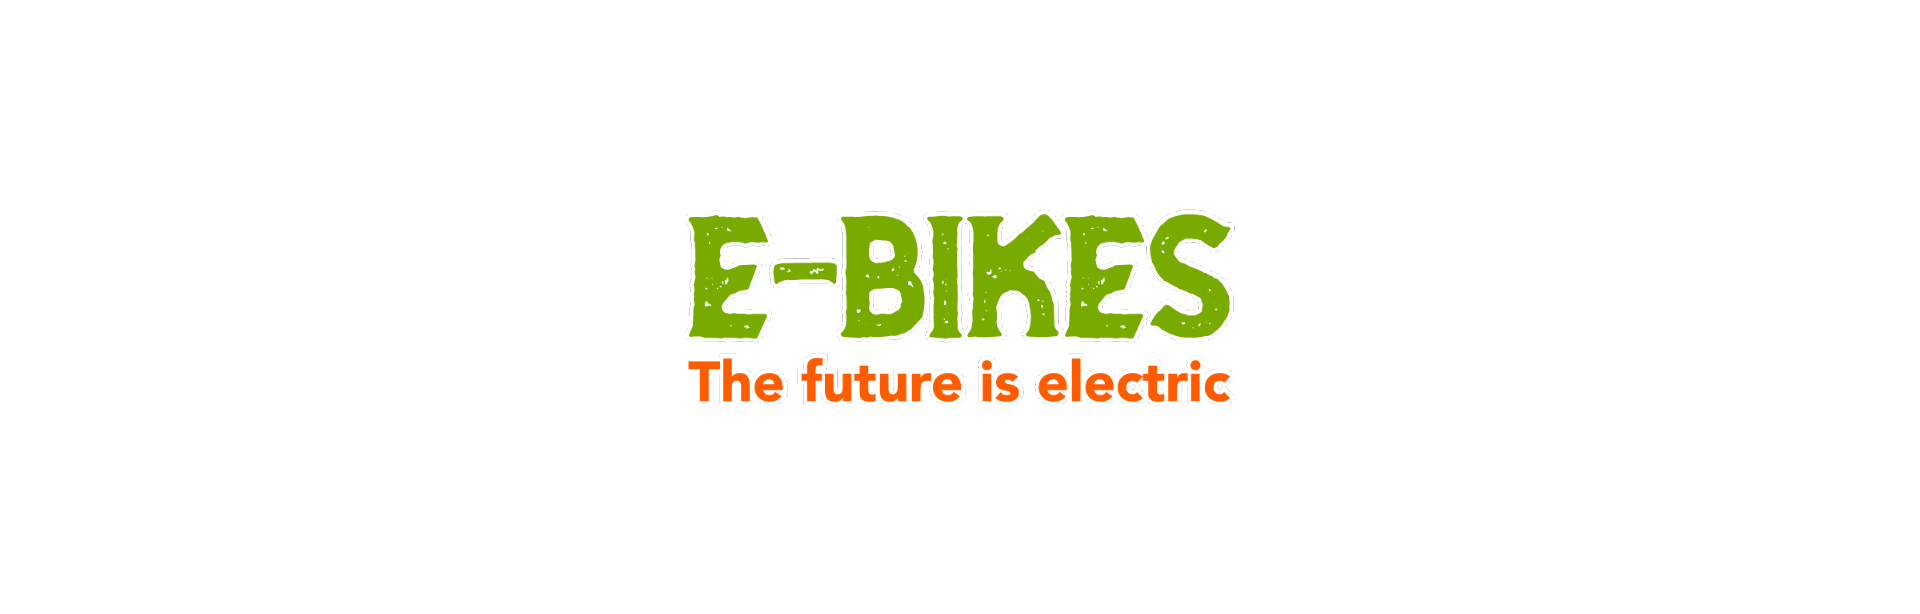 My Next Bike will be an Electric Bike